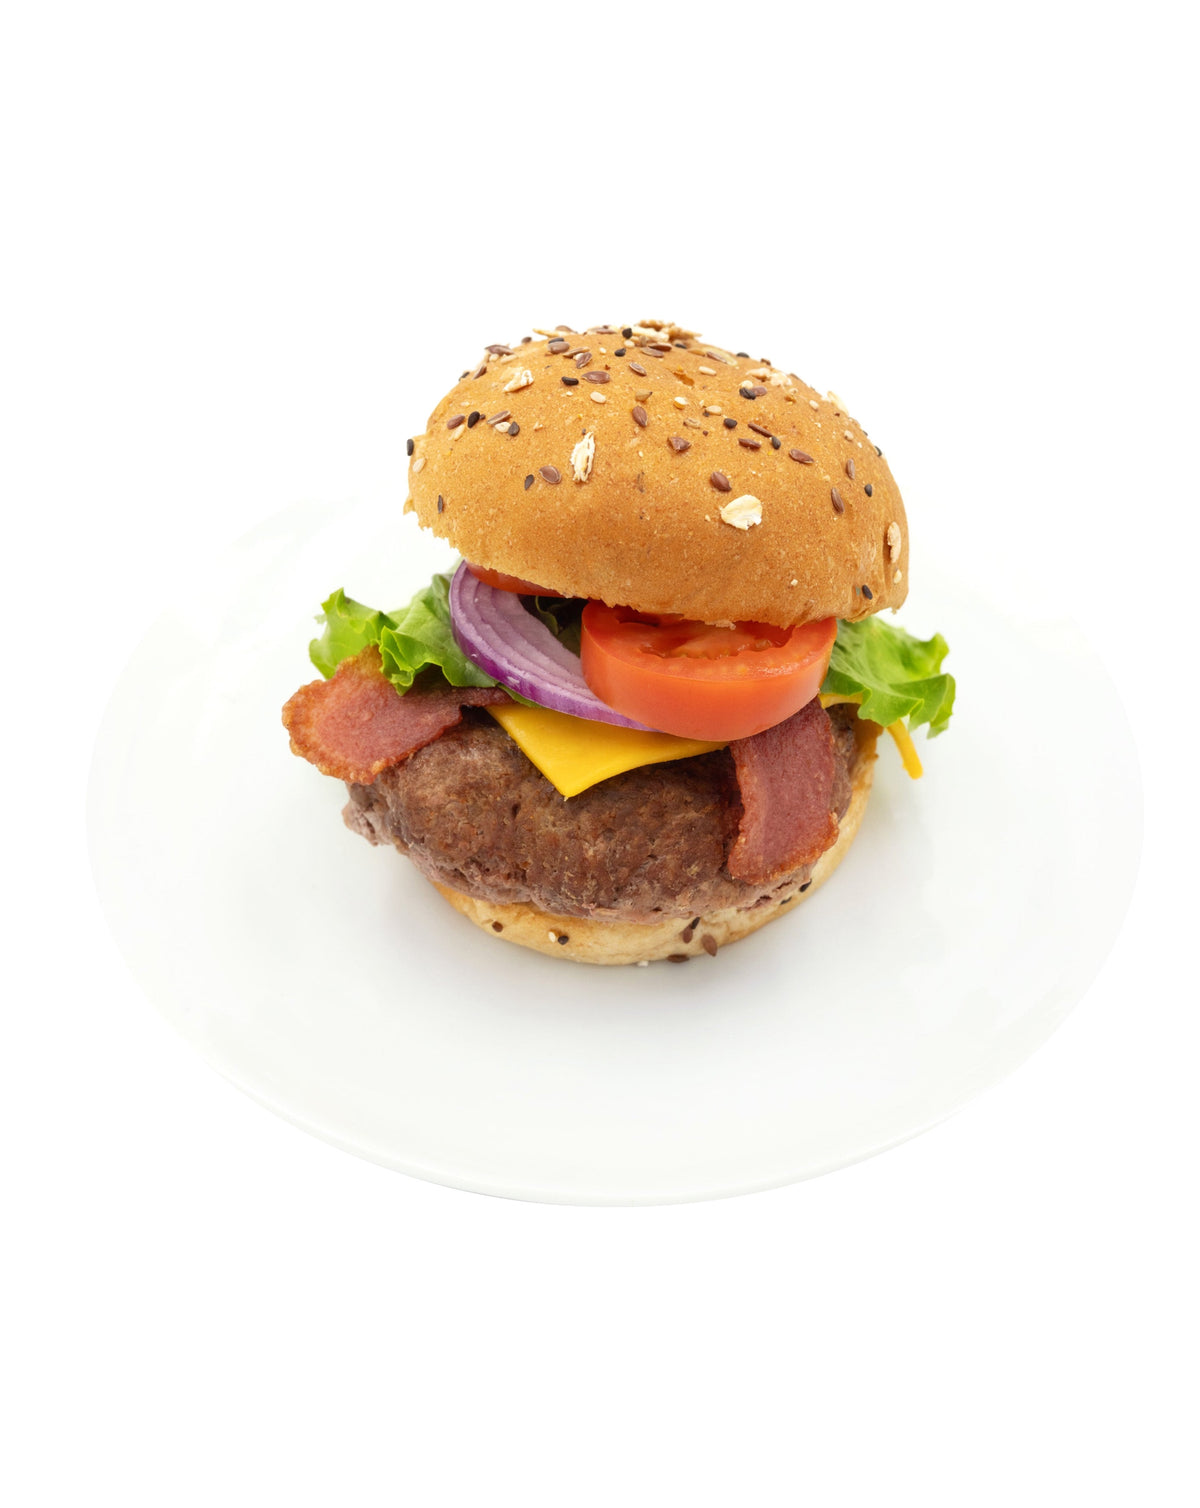 Bacon Cheeseburger with Whole Grain Bun